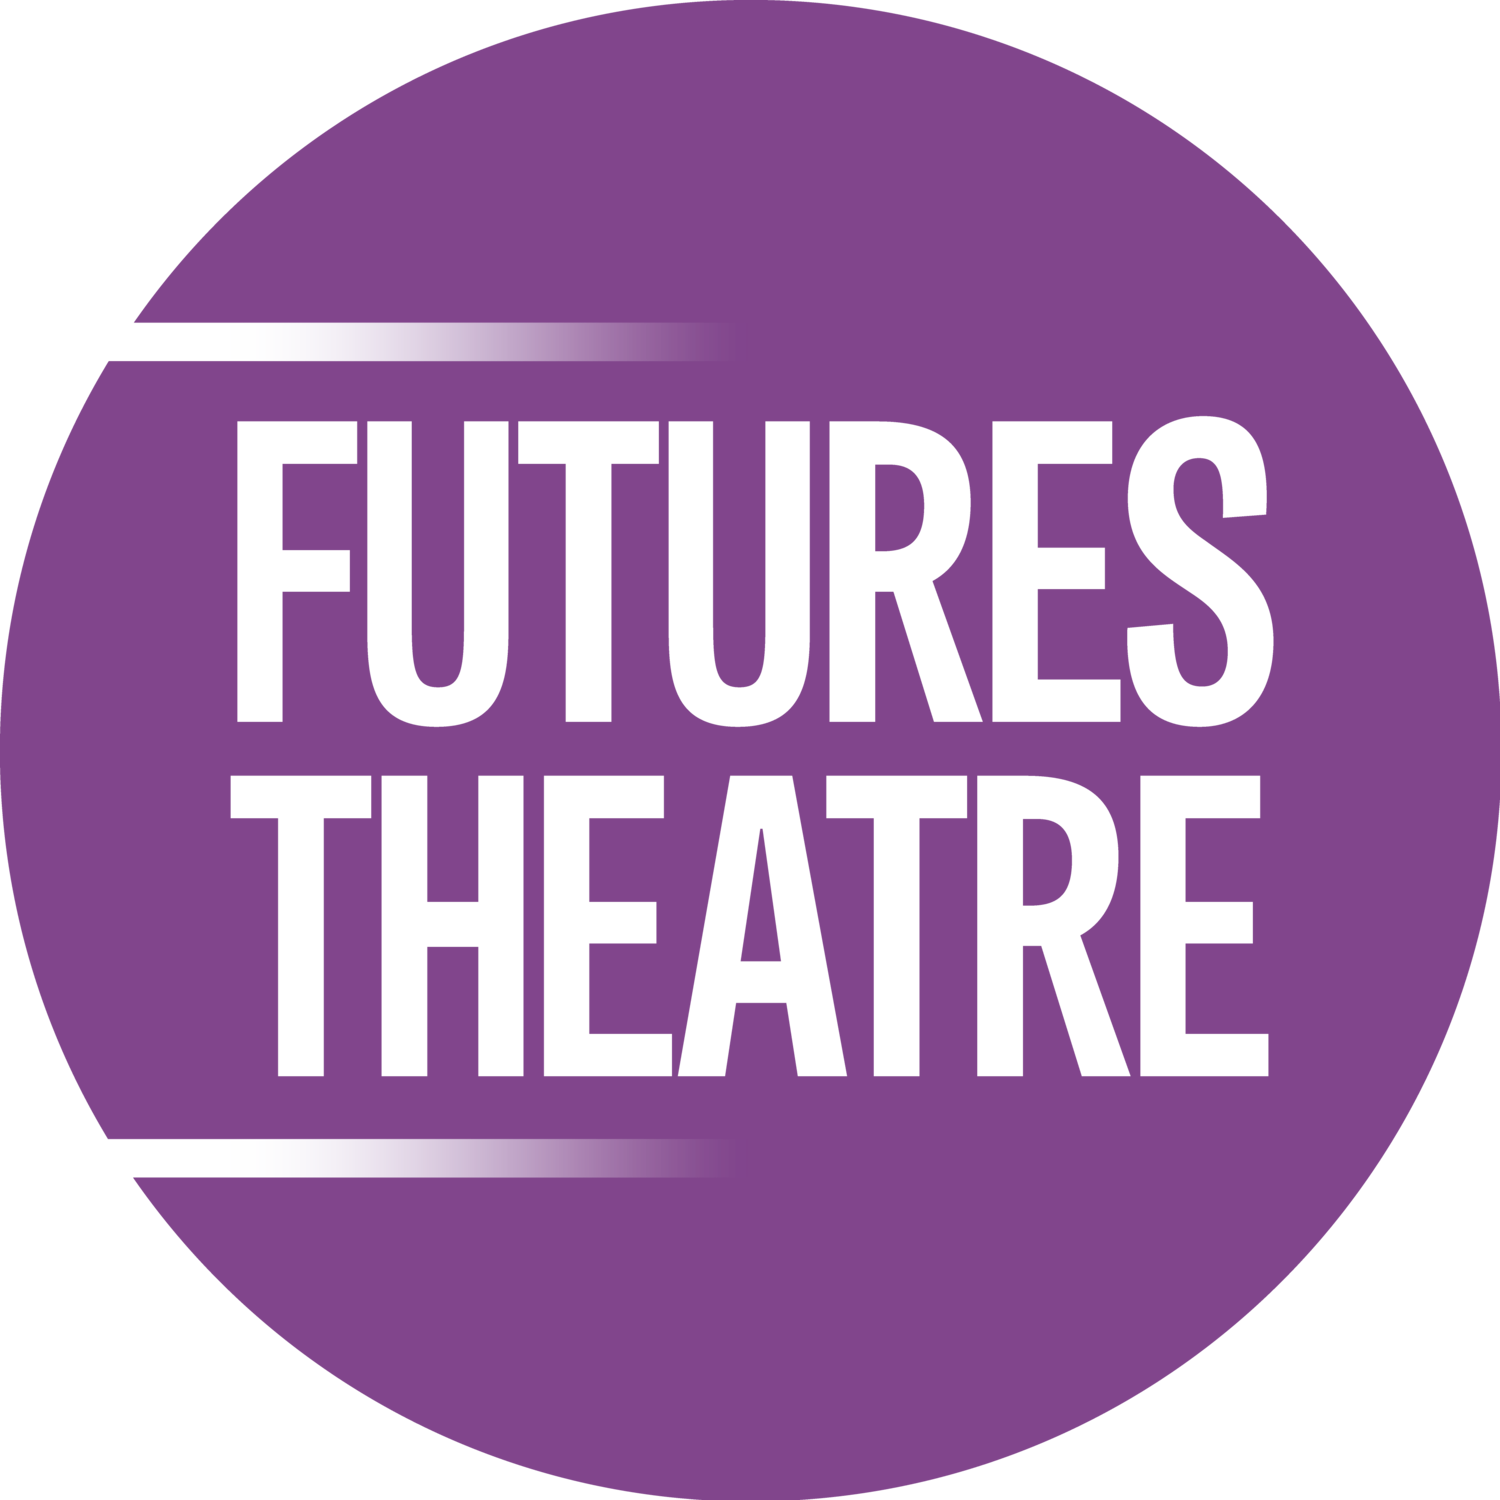 Futures Theatre